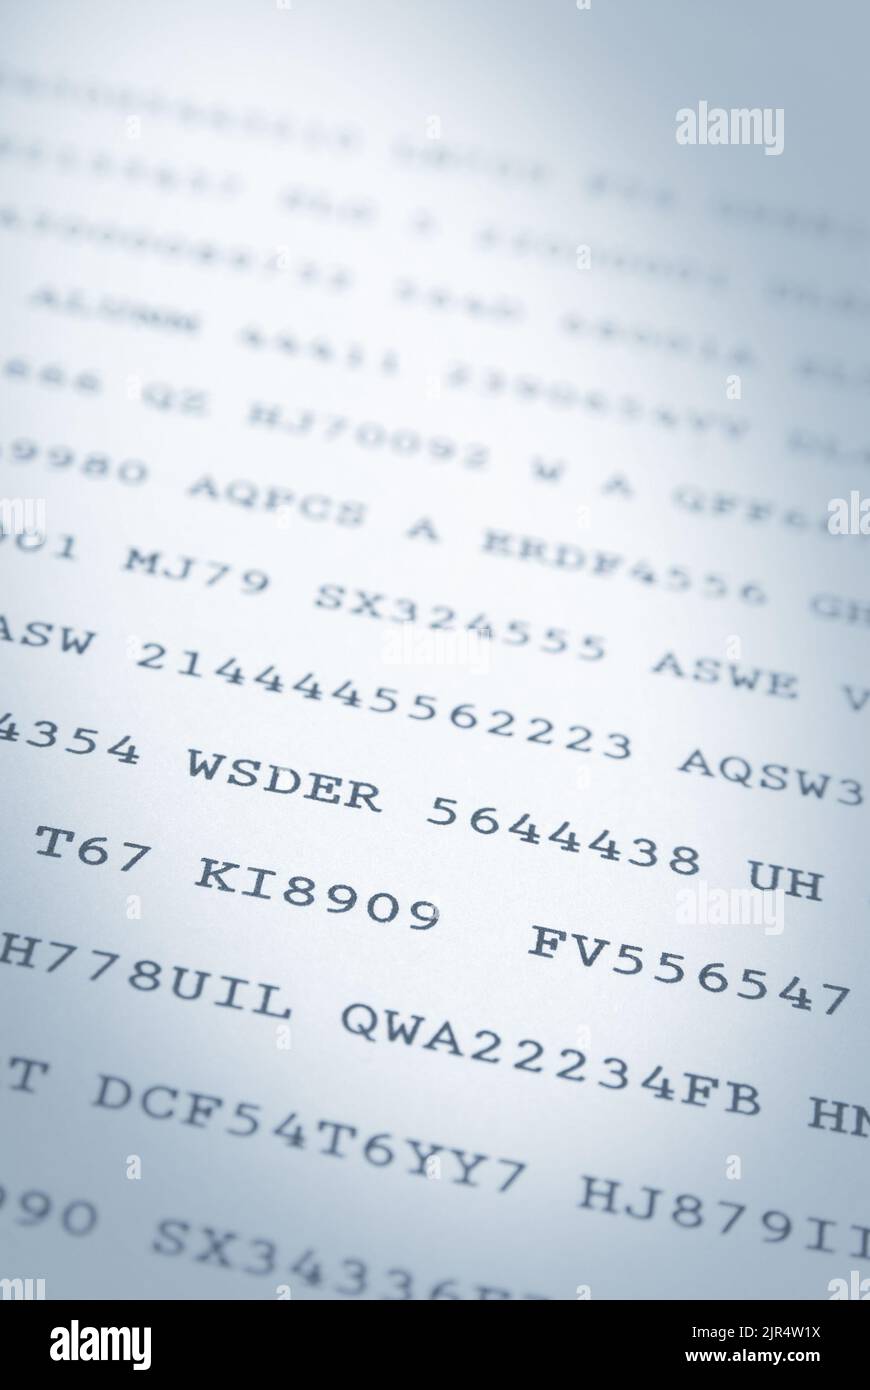 Gros plan de codes aléatoires de chiffres et de lettres imprimés sur papier Banque D'Images